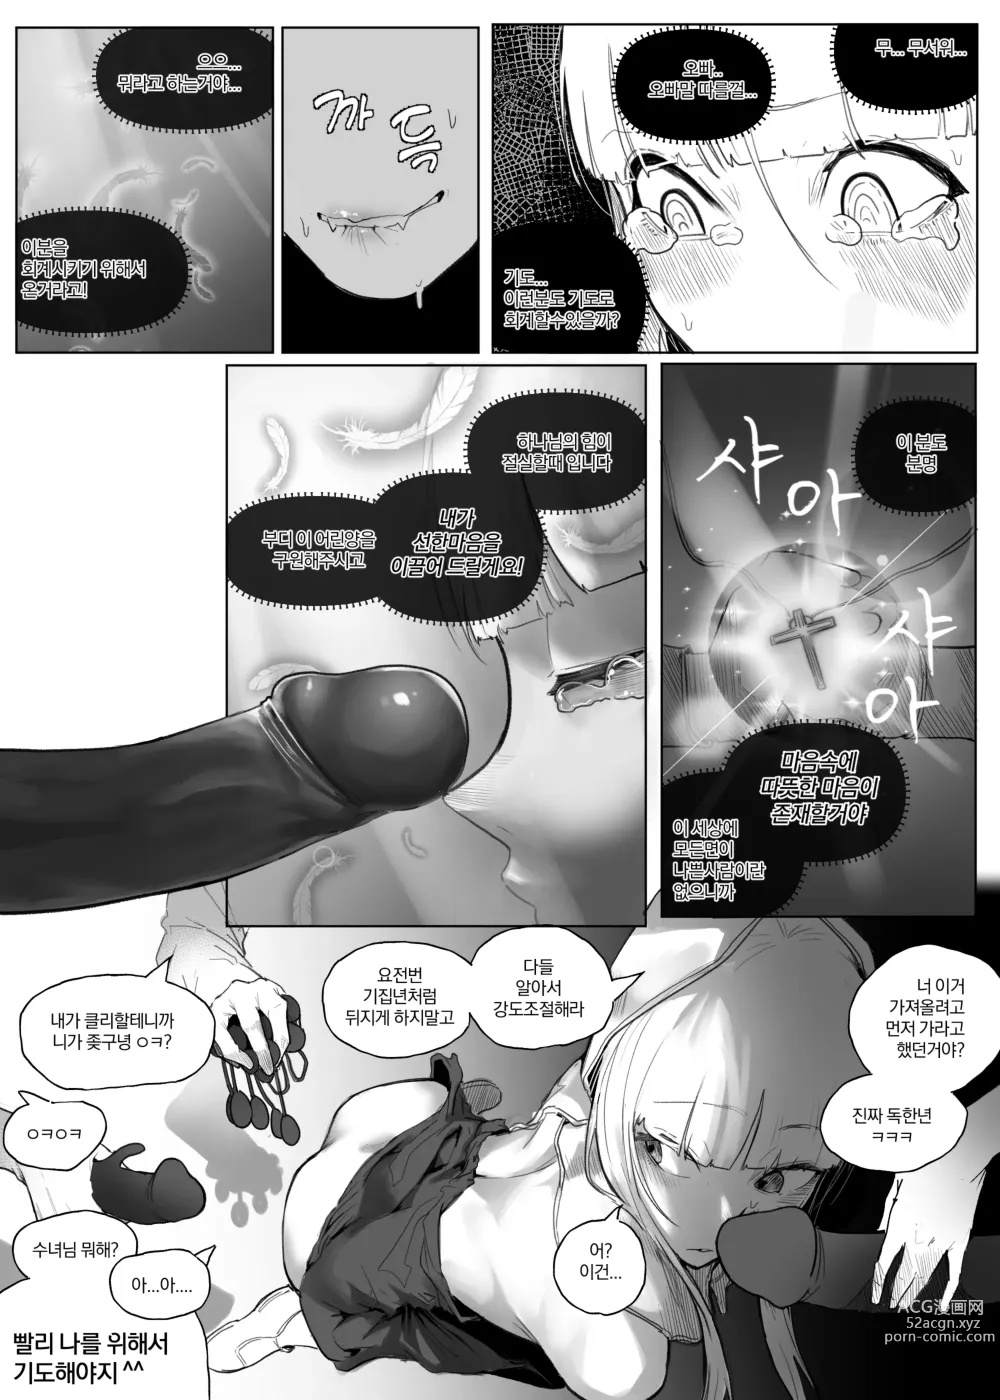 Page 11 of doujinshi 왕따 + 일진 + 교육